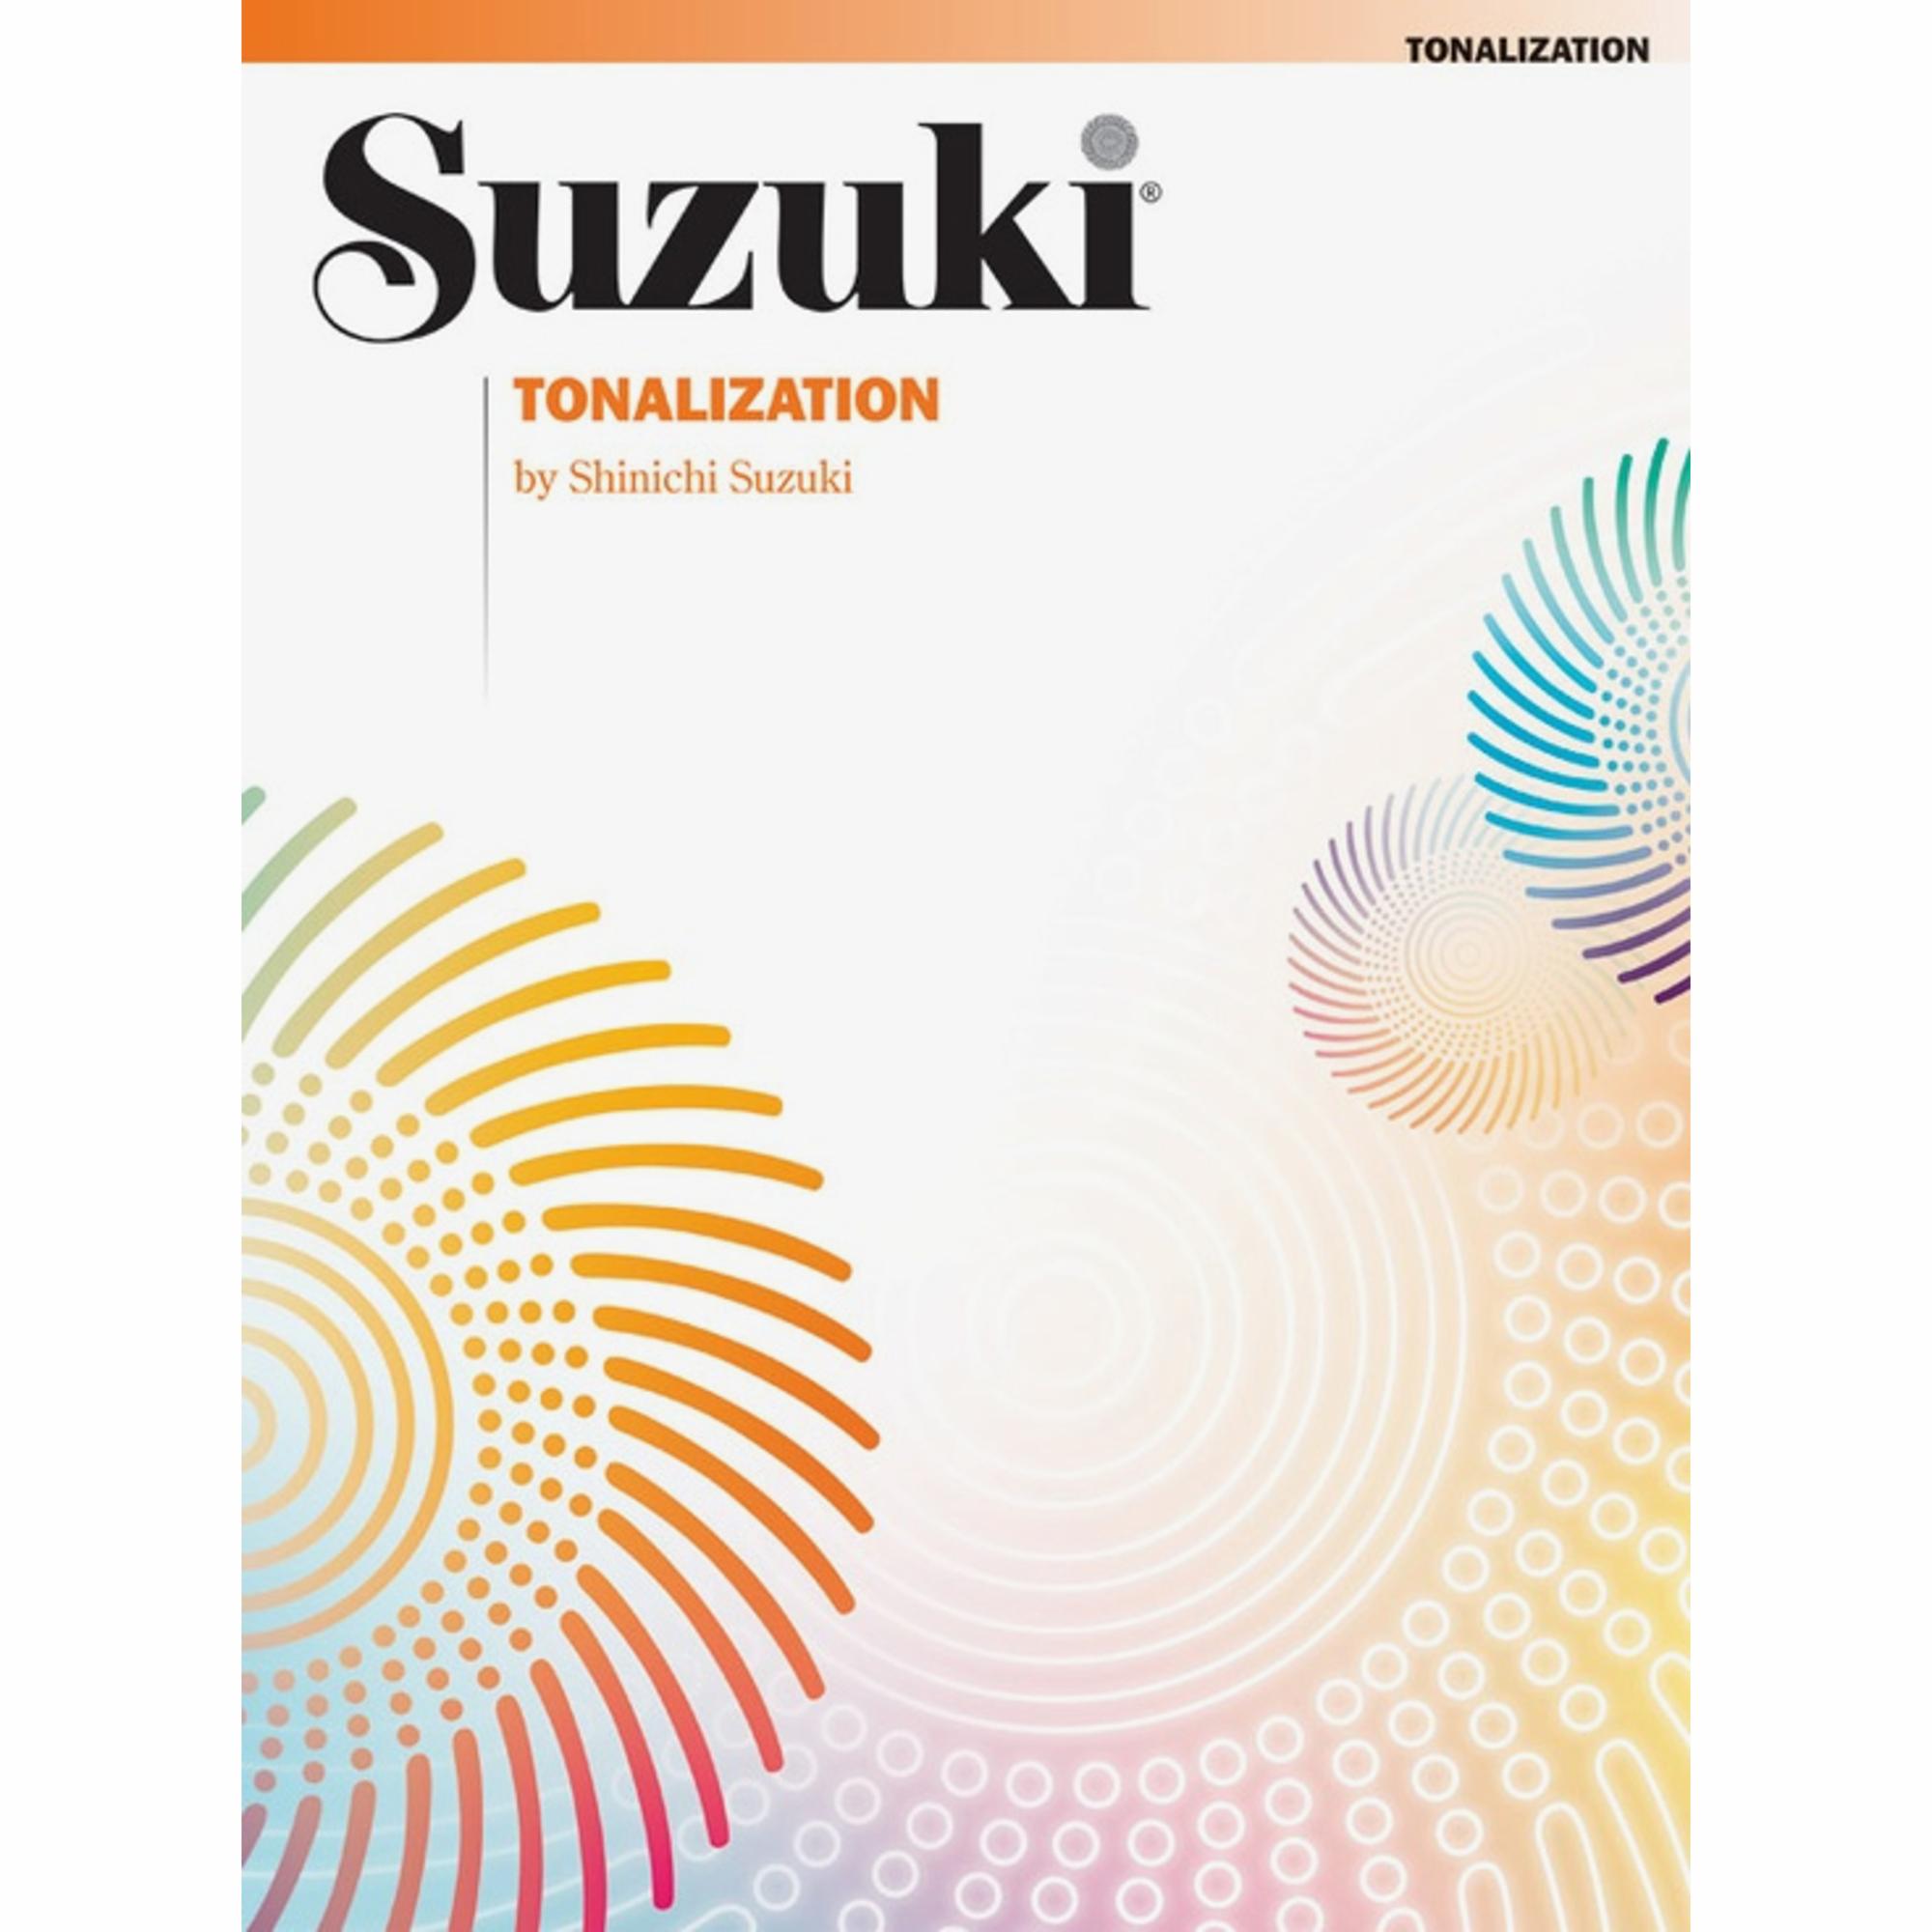 Suzuki: Tonalization